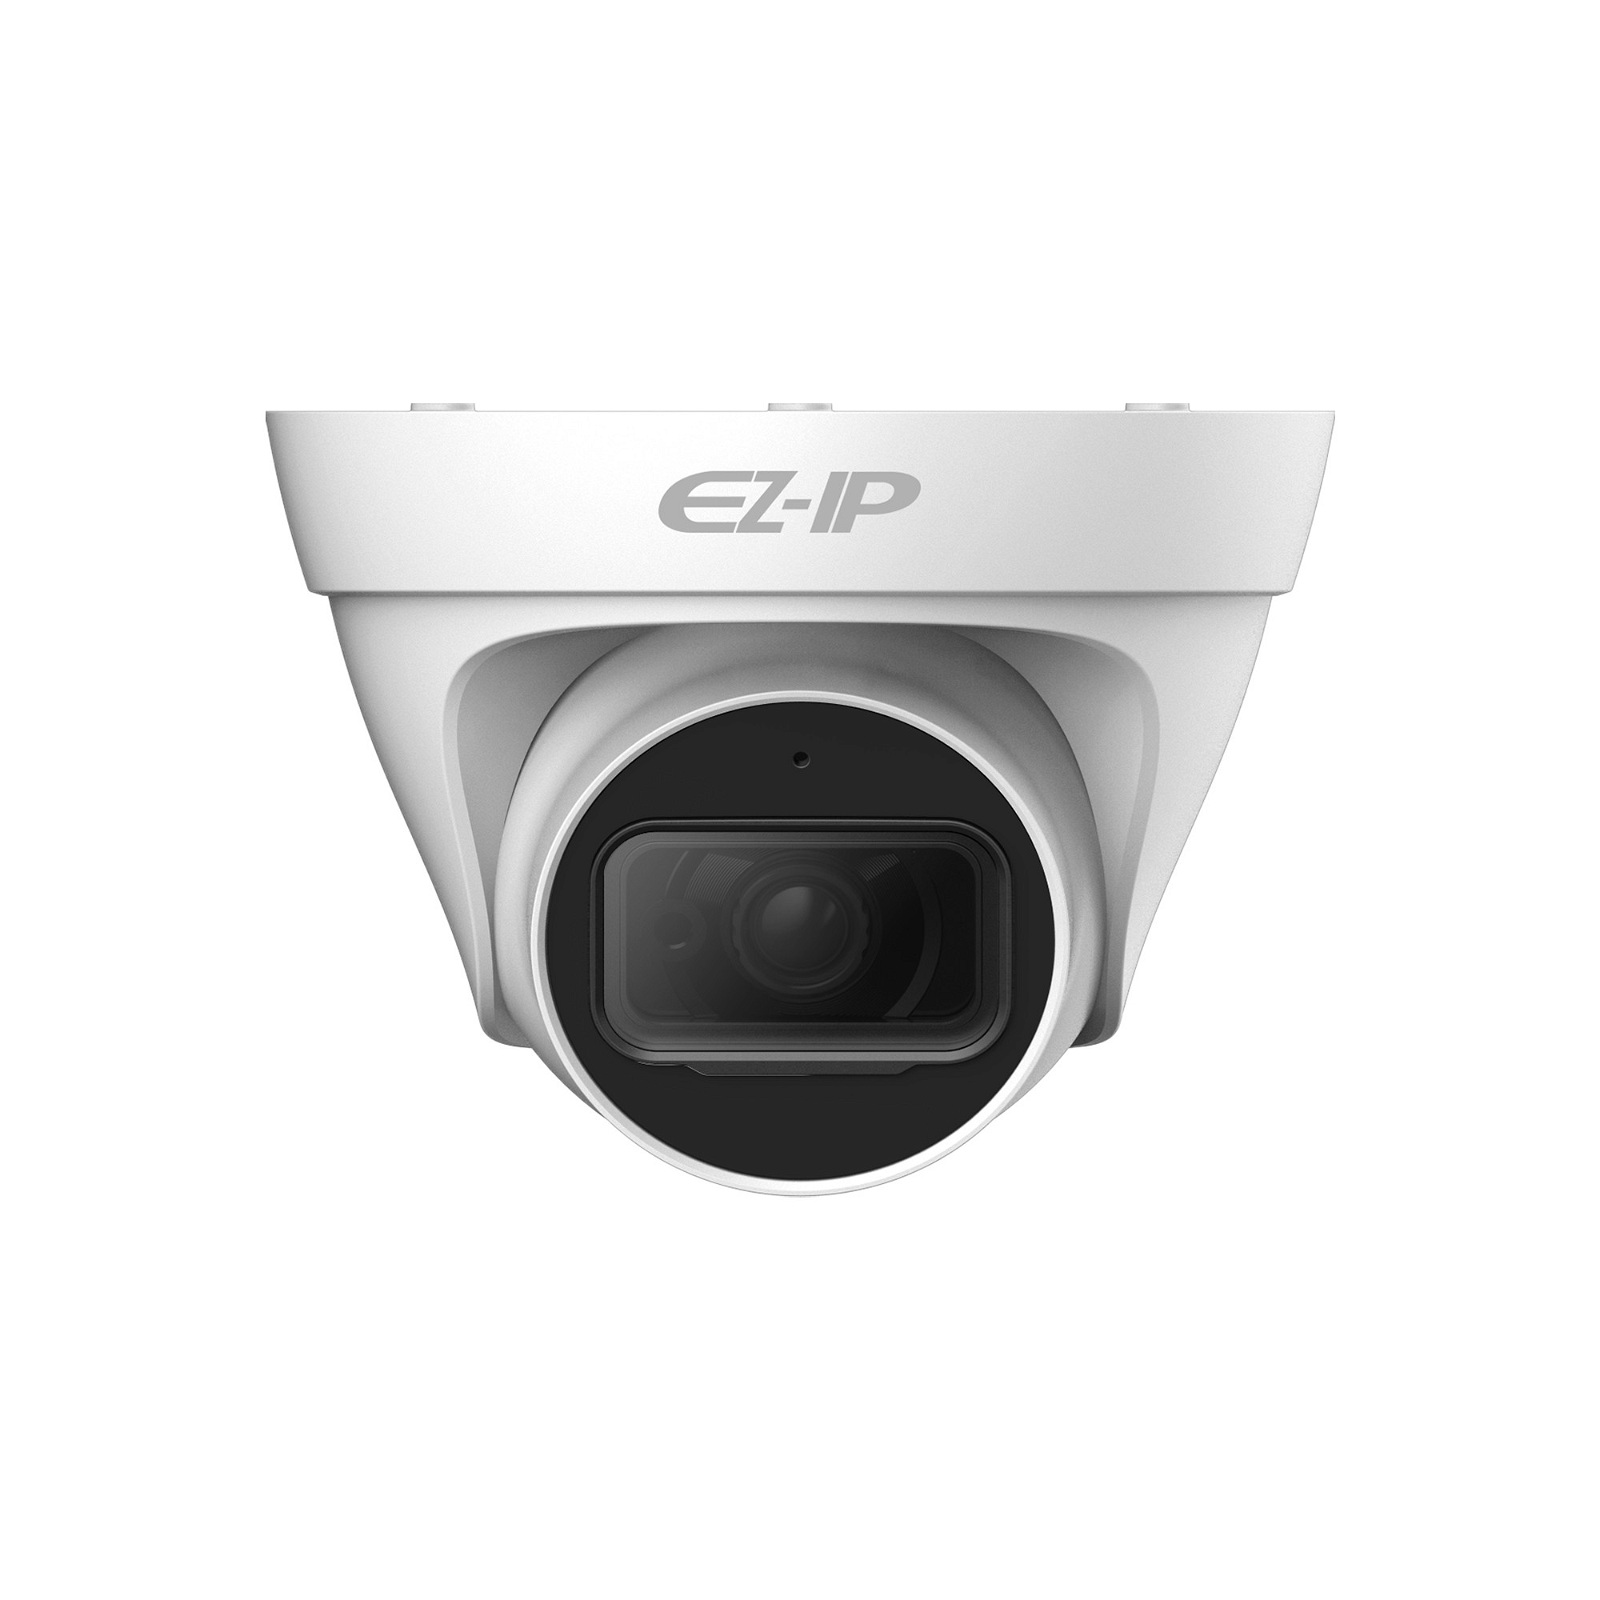 Kamera IP Dahua EZ-IP IPC-T1B20P-0360B 2Mpx, 3.6mm, PoE